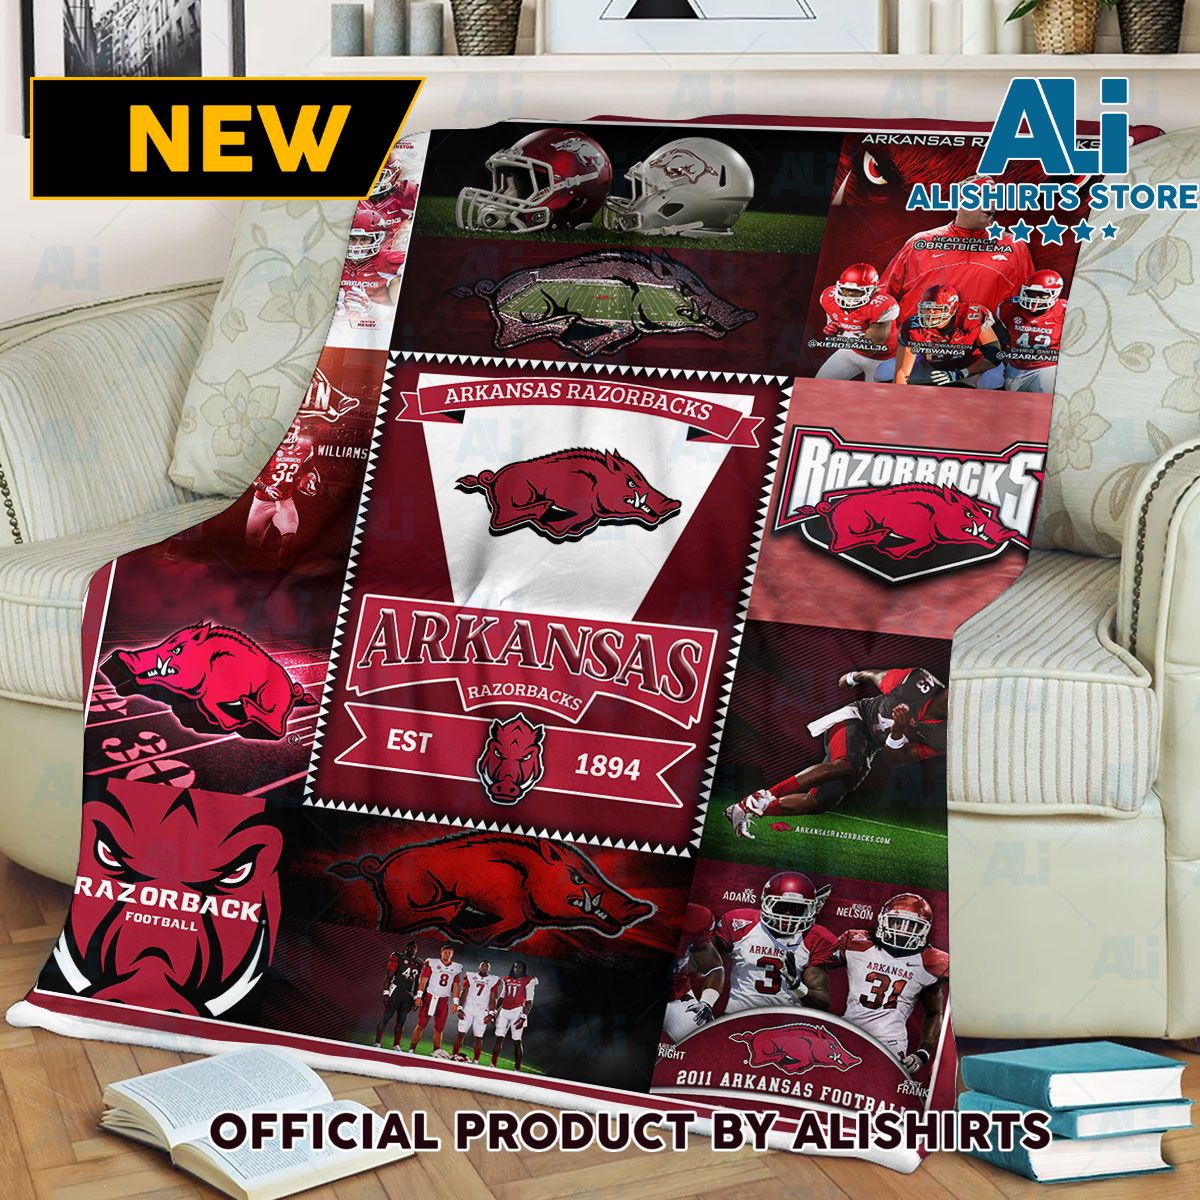 NCAA Arkansas Razorbacks Blanket est 1894 Blanket College Sports Fan Gifts